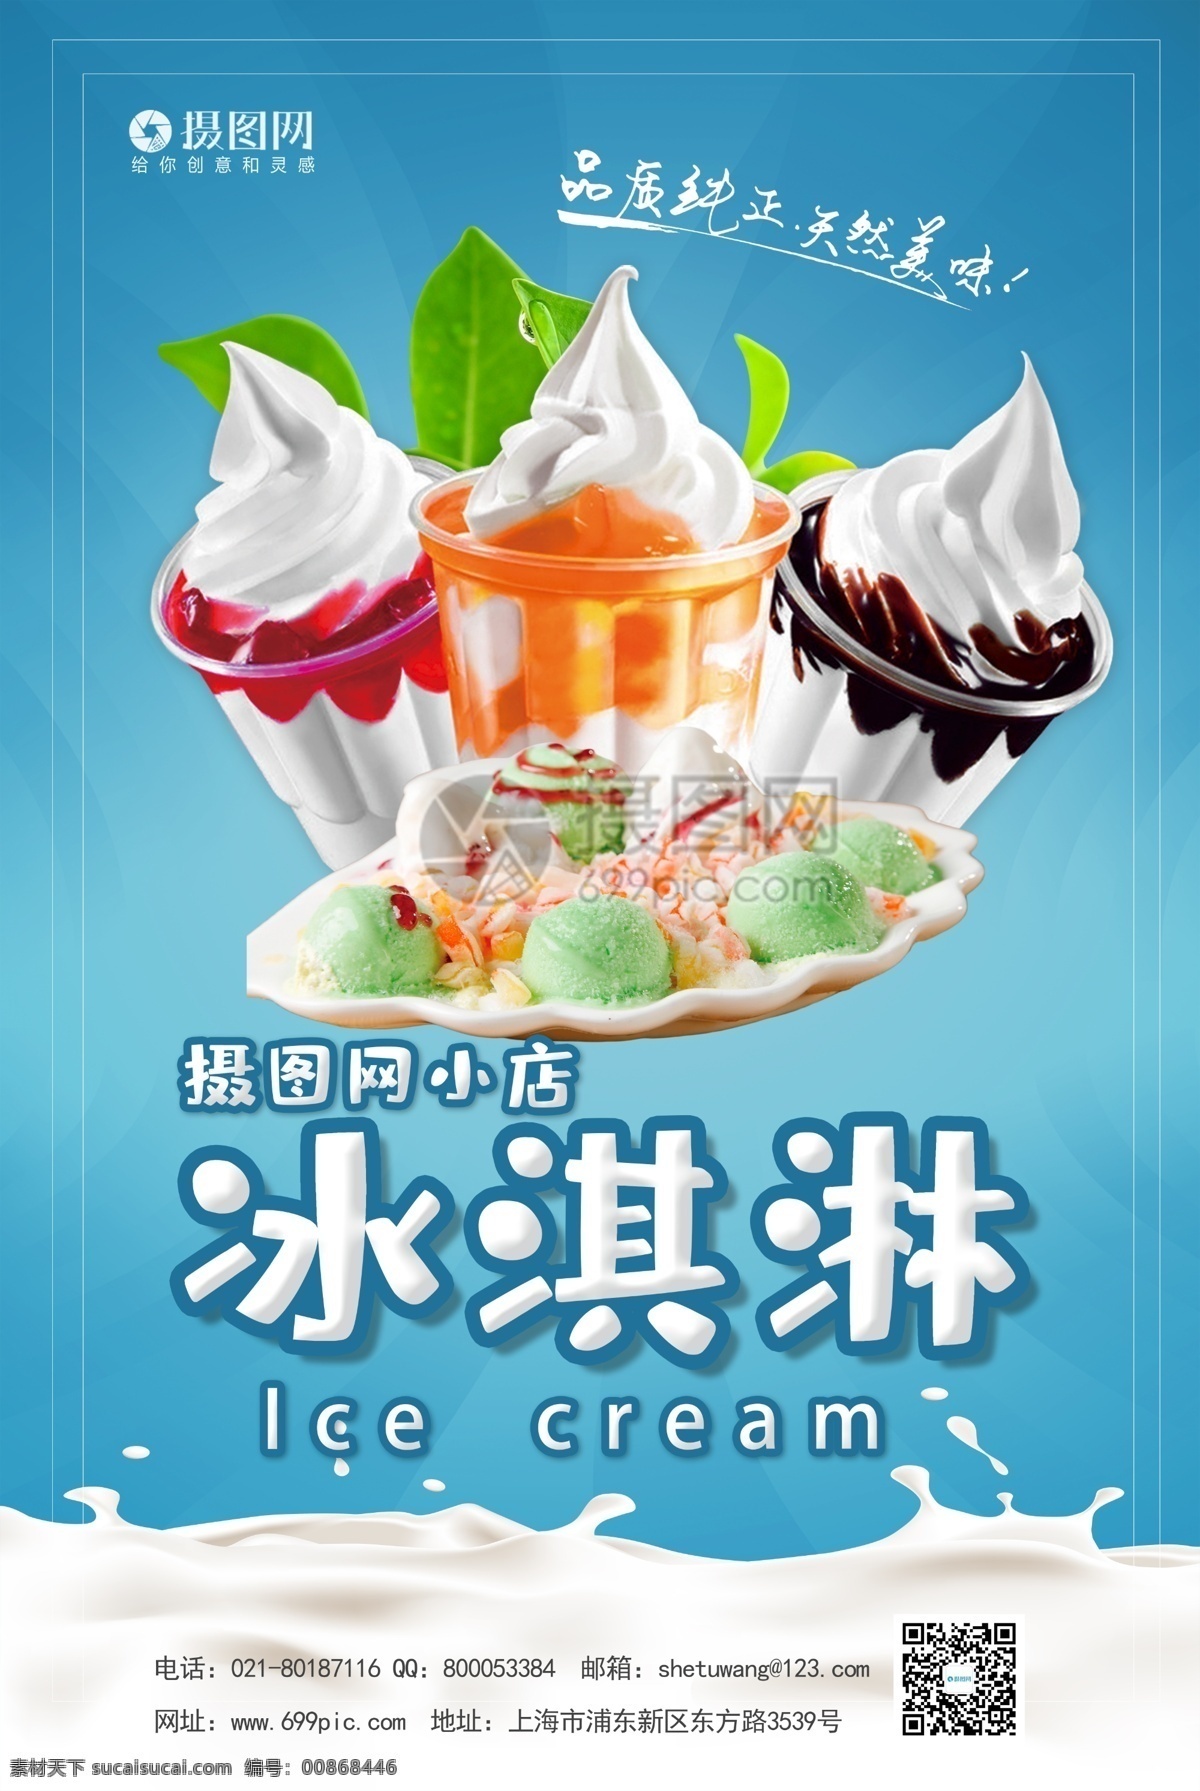 卡 通风 冰淇淋 宣传海报 模板 冰淇淋店 冰淇凌 冰激淋 甜筒 水果冰淇淋 冰淇淋海报 凉爽 冰凉 冷饮 冰爽可口